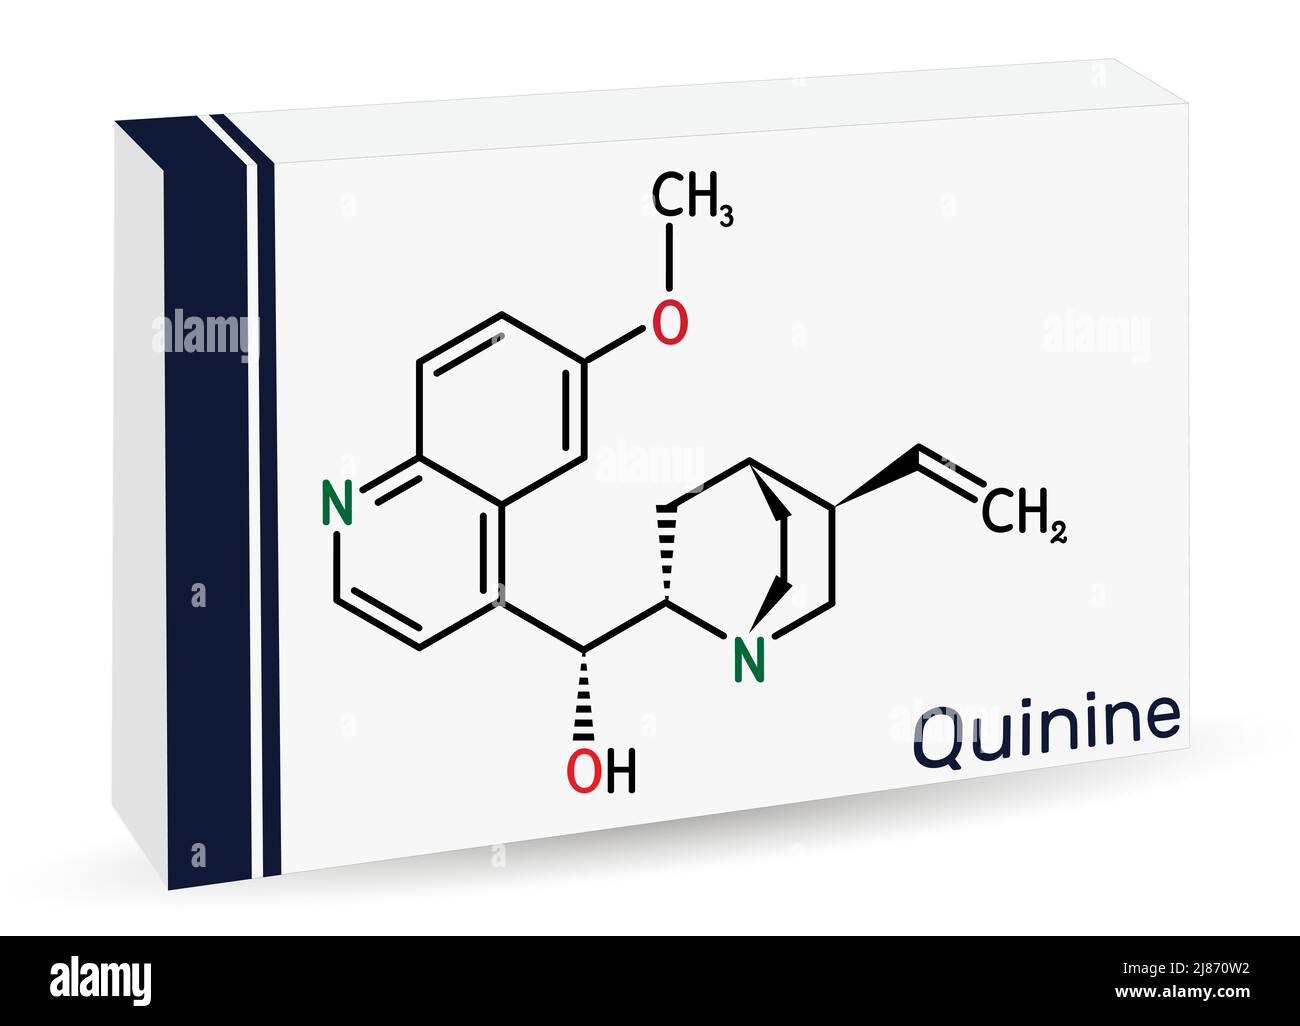 Chinin-Molekül. Es ist ein natürliches Alkaloid, das aus der Rinde des Cinchona-Baumes stammt. Chemische Formel des Skeletts. Papierverpackungen für Medikamente. Vektorgrafik Stock Vektor